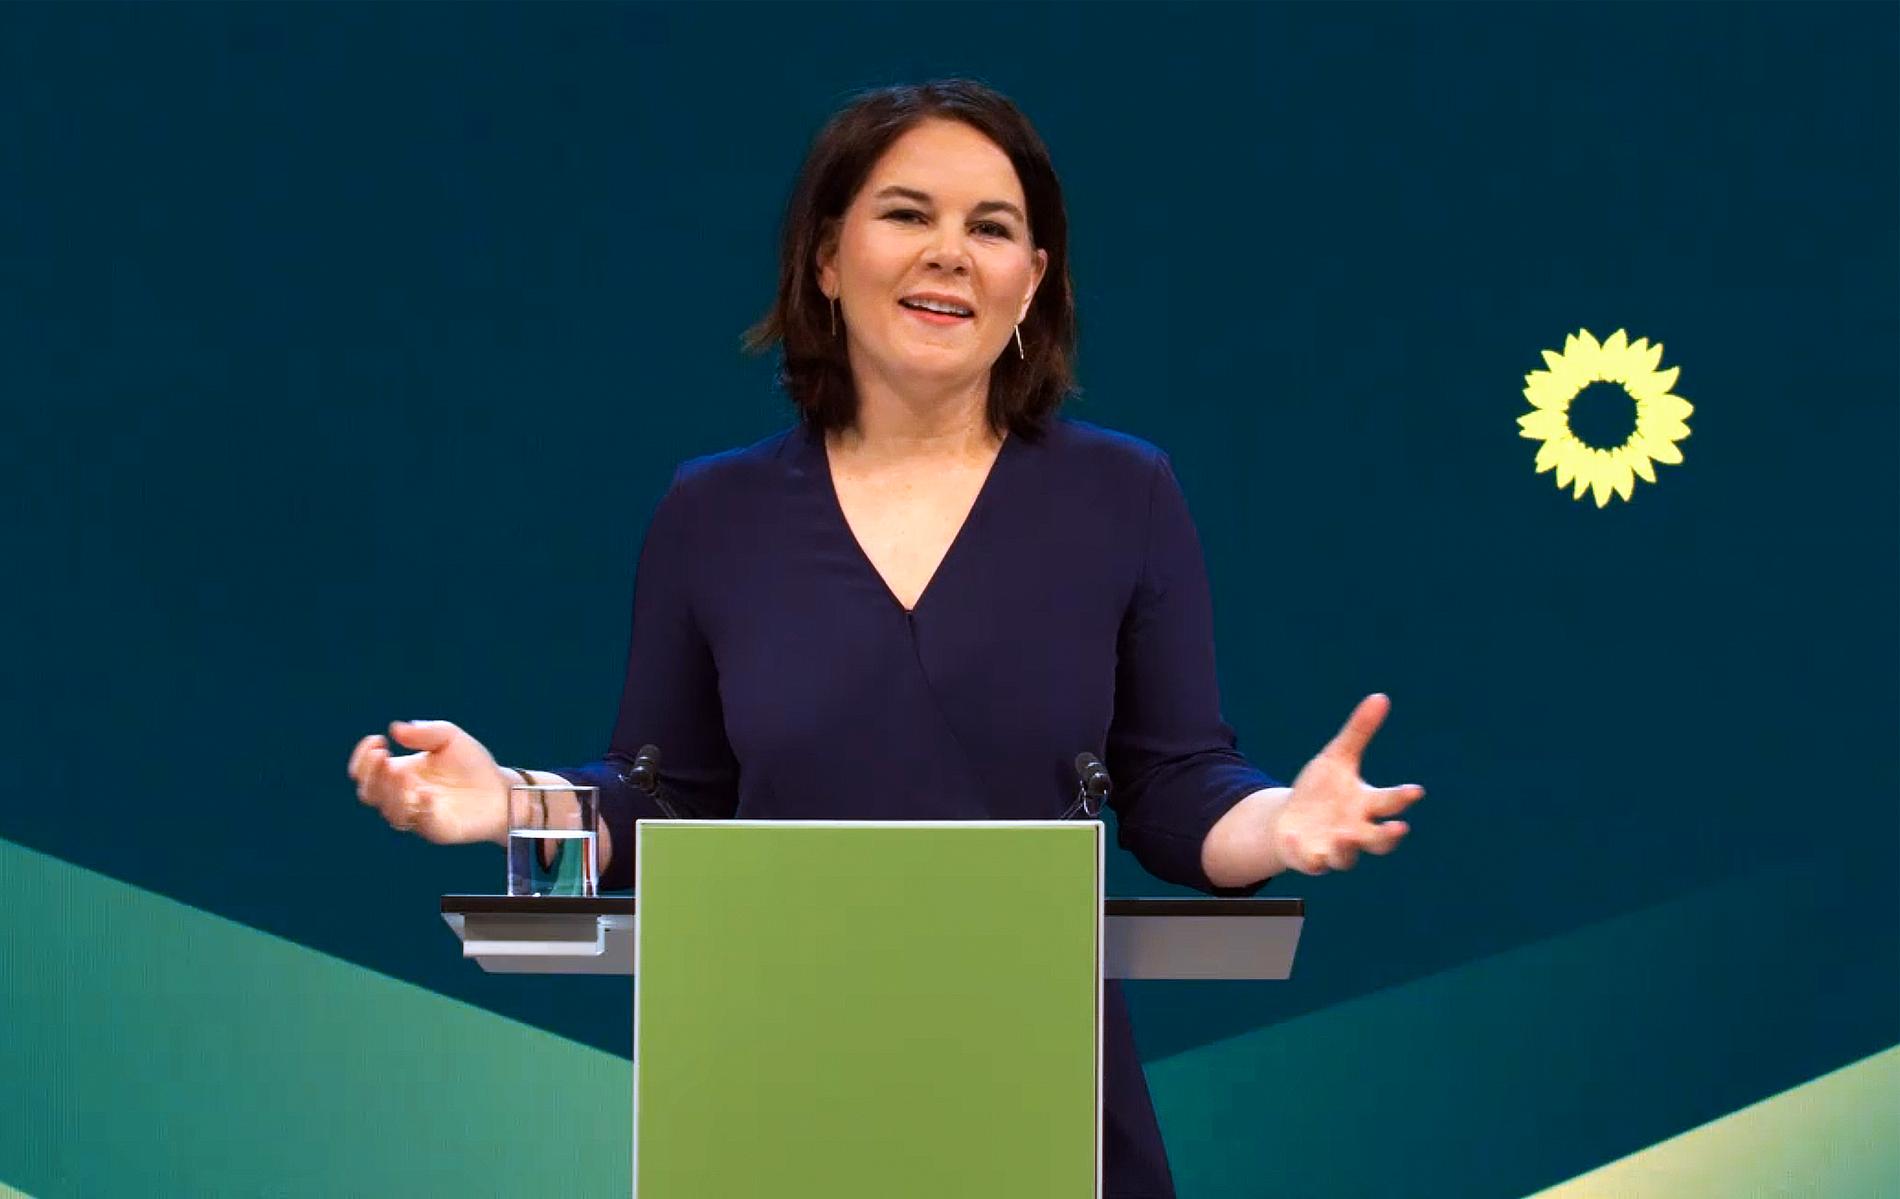 Annalena Baerbock är De Grönas kandidat till kansler inför valet i höst. För första gången finns en liten, men realistisk, möjlighet att partiet kan vinna. 